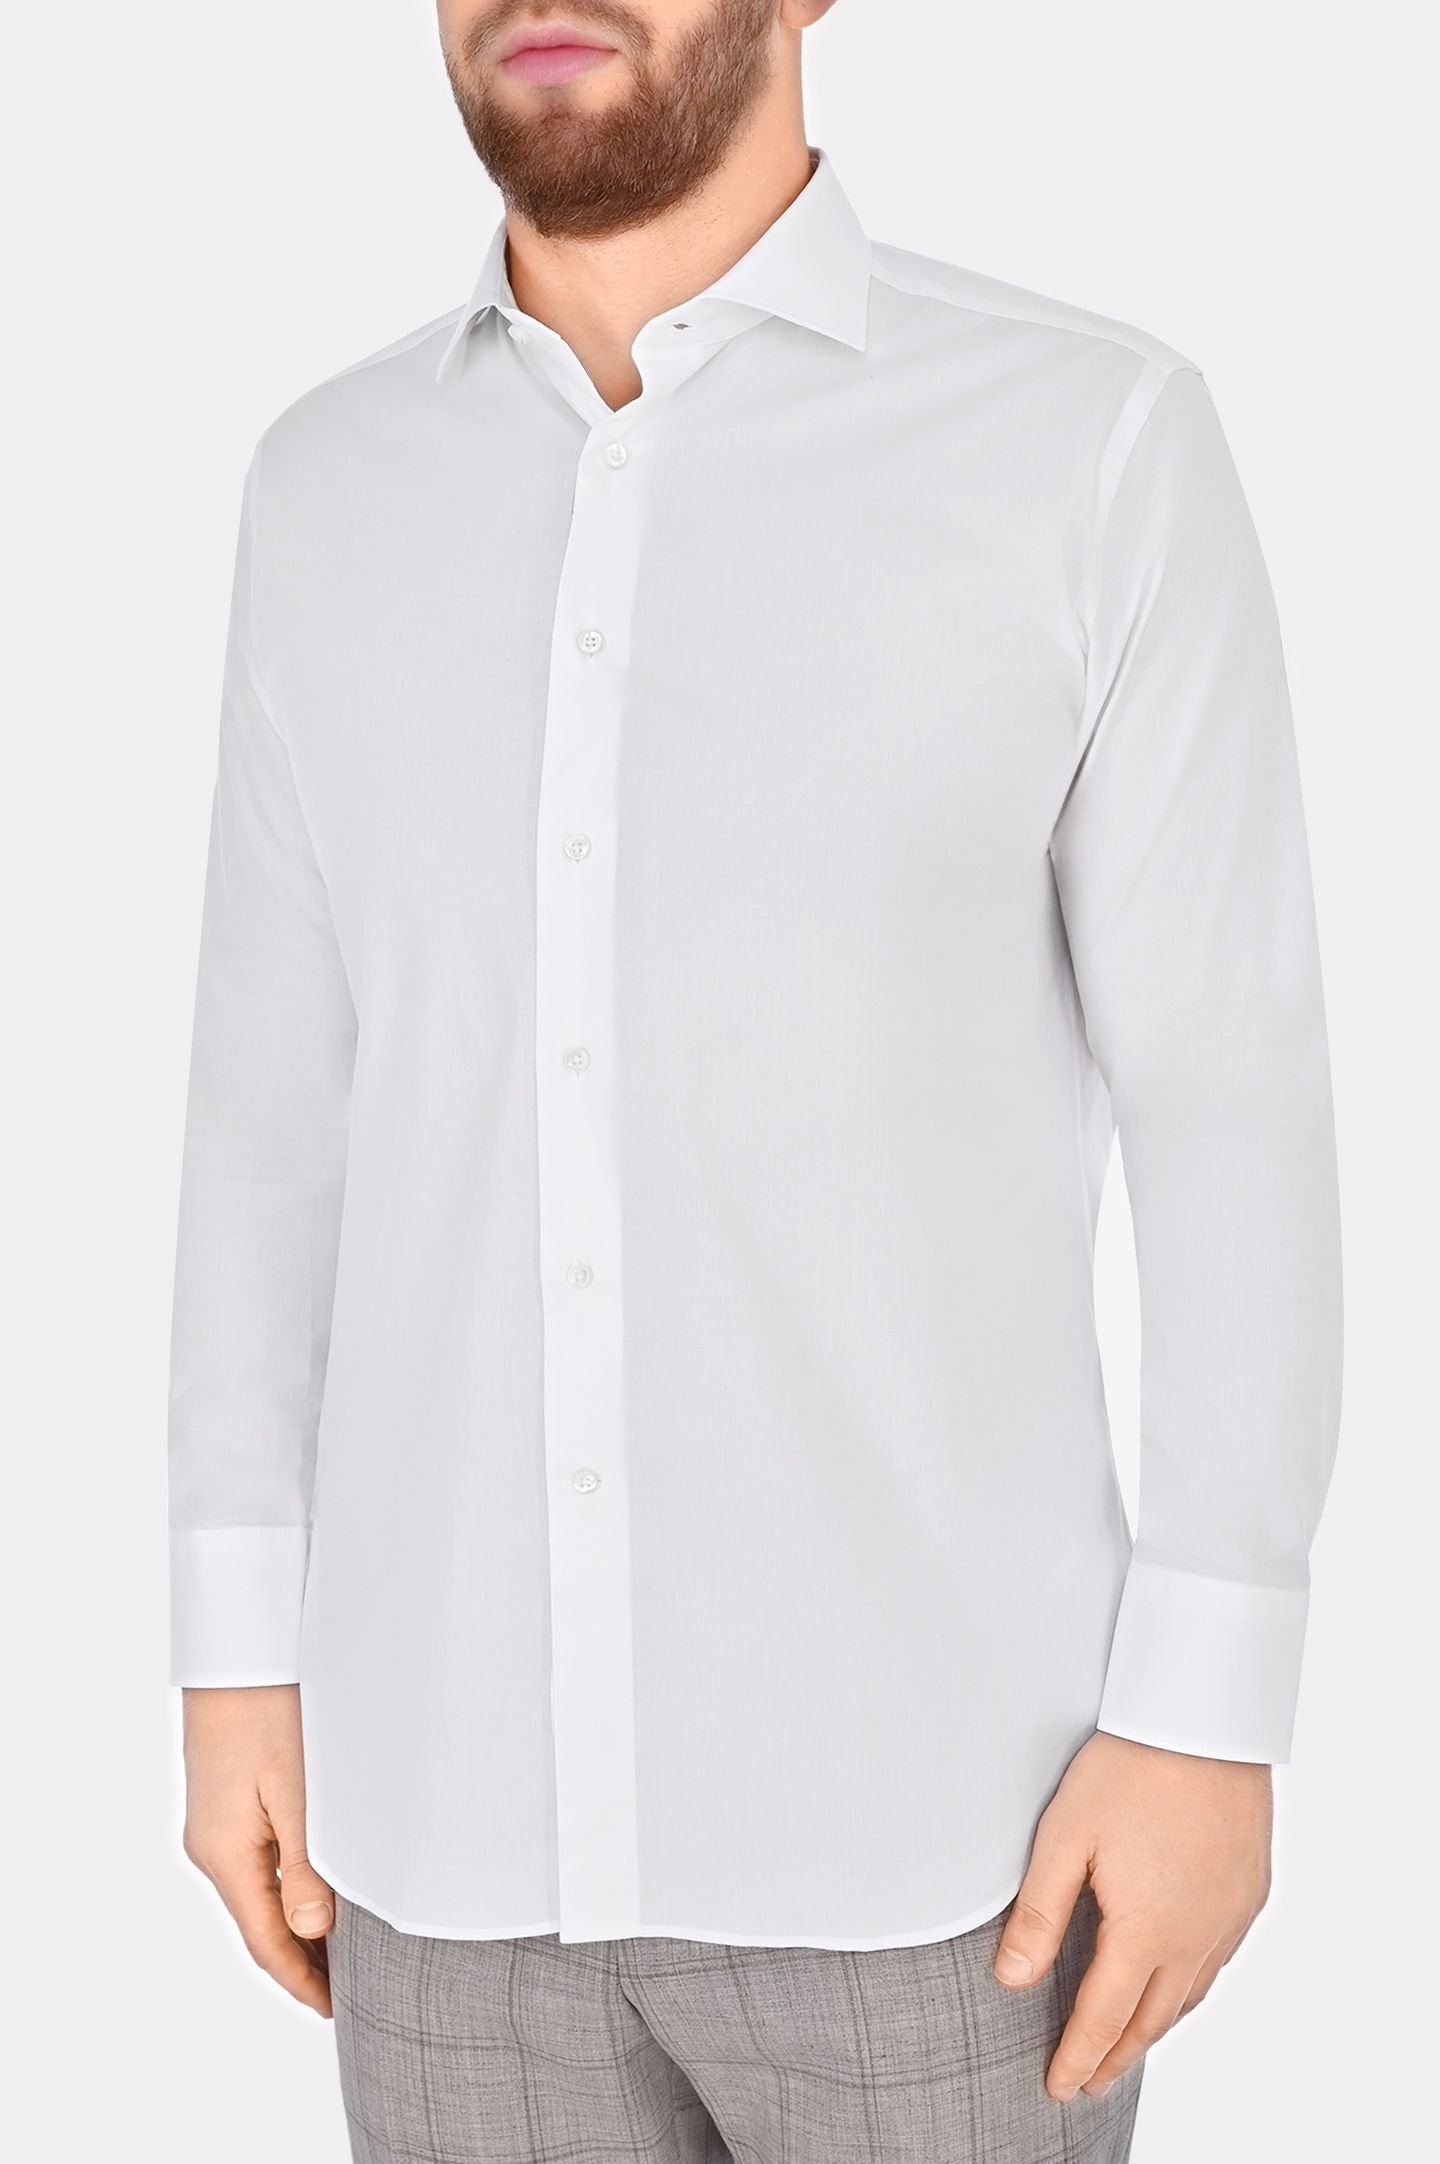 Рубашка из хлопка и эластана CANALI GD02832 7C3/1, цвет: Белый, Мужской